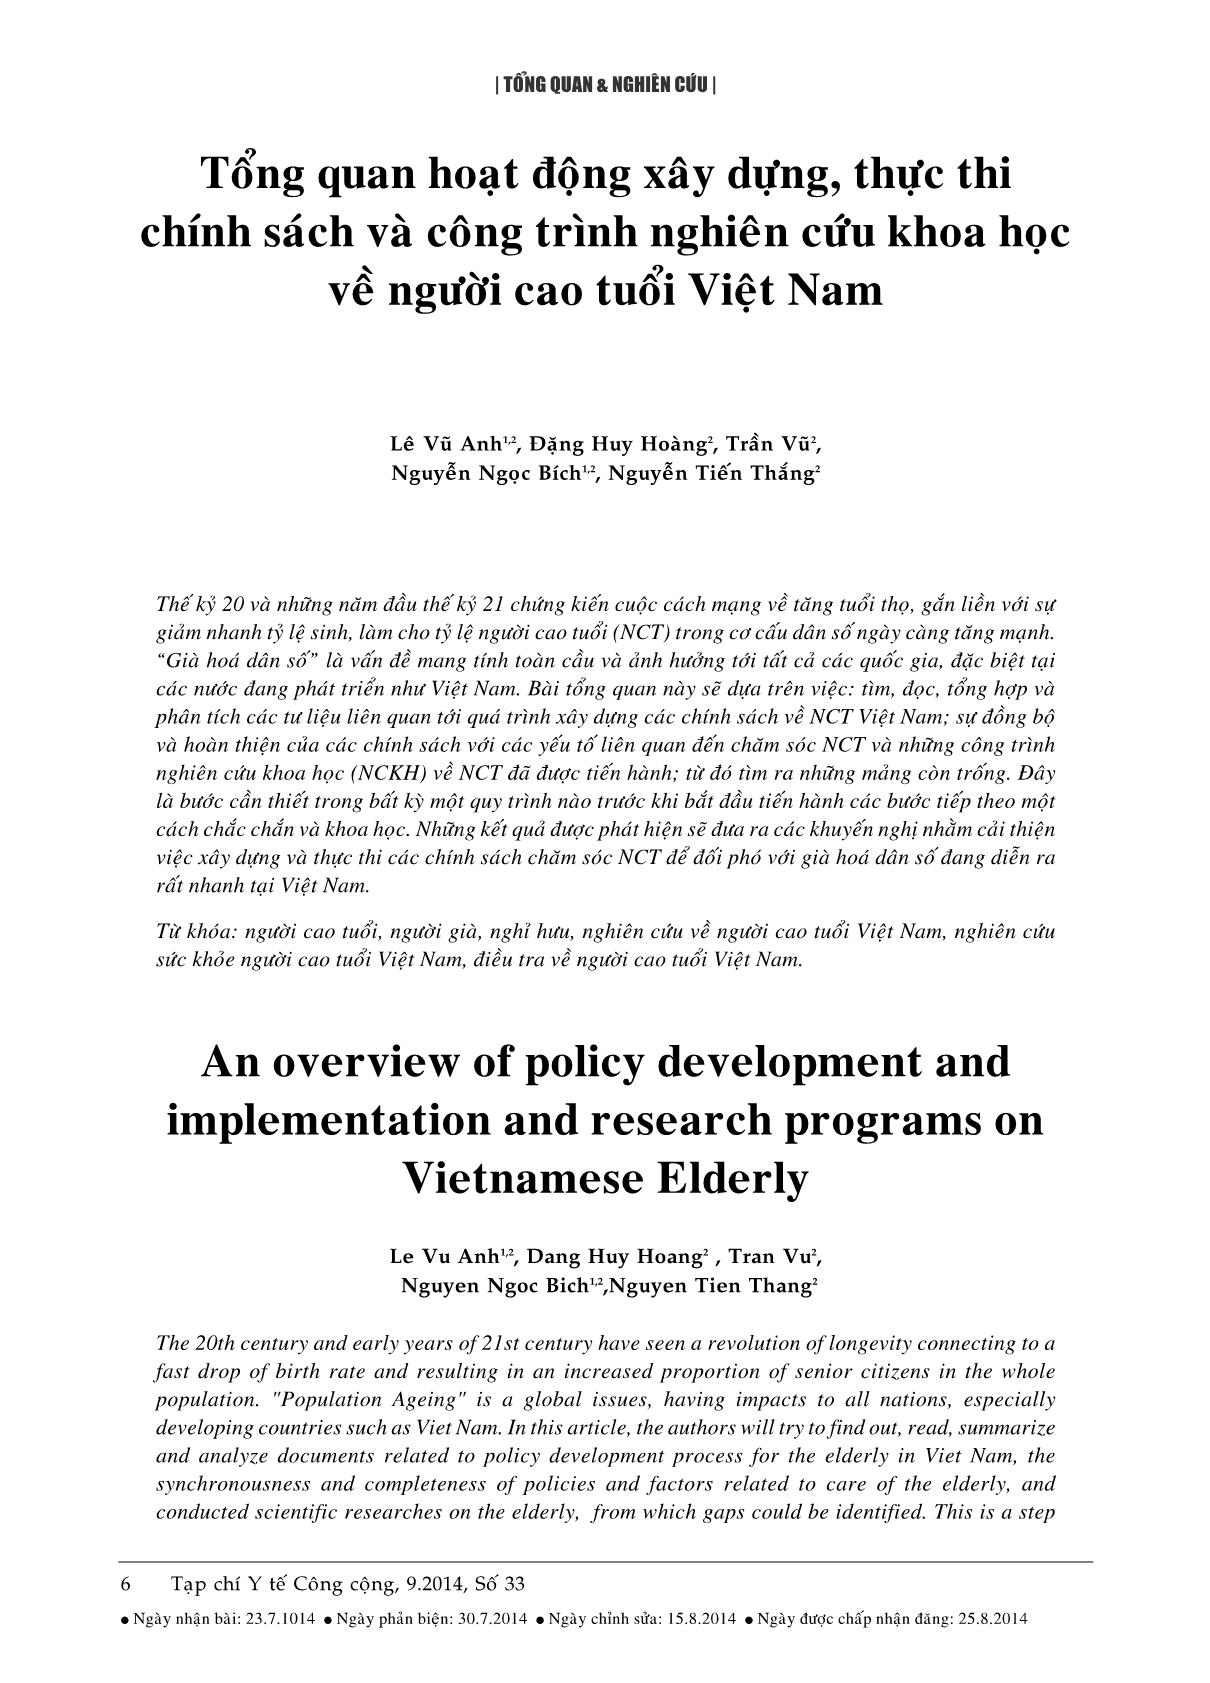 Tổng quan hoạt động xây dựng, thực thi chính sách và công trình nghiên cứu khoa học về người cao tuổi Việt Nam trang 1